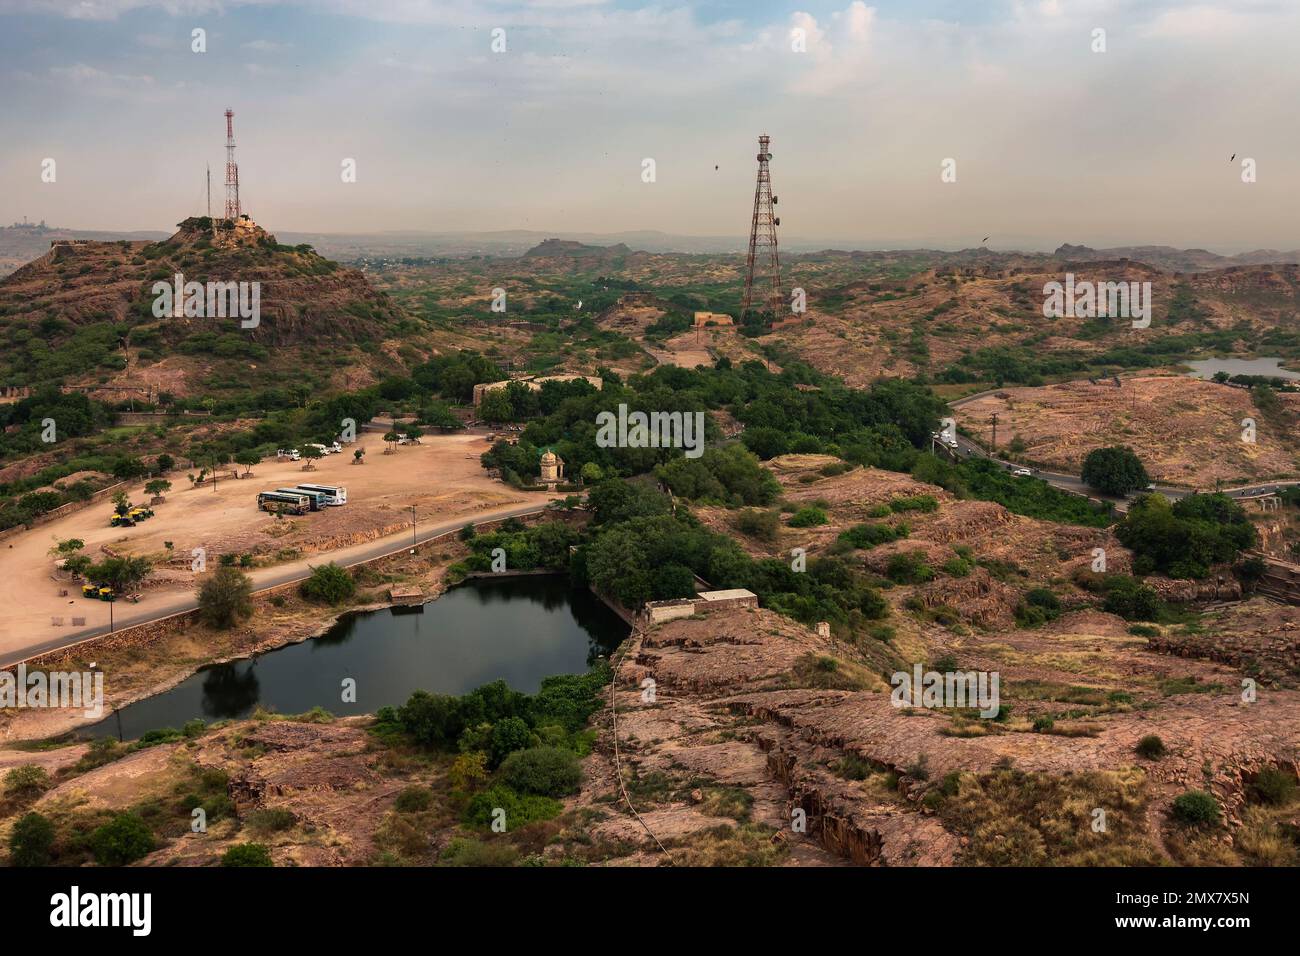 Vue de dessus de la ville de Jodhpur avec parking, tours mobiles et lac d'eau à côté de Mehrangarh fort, jodhpur, Rajasthan, Inde. Fond de ciel bleu. Banque D'Images